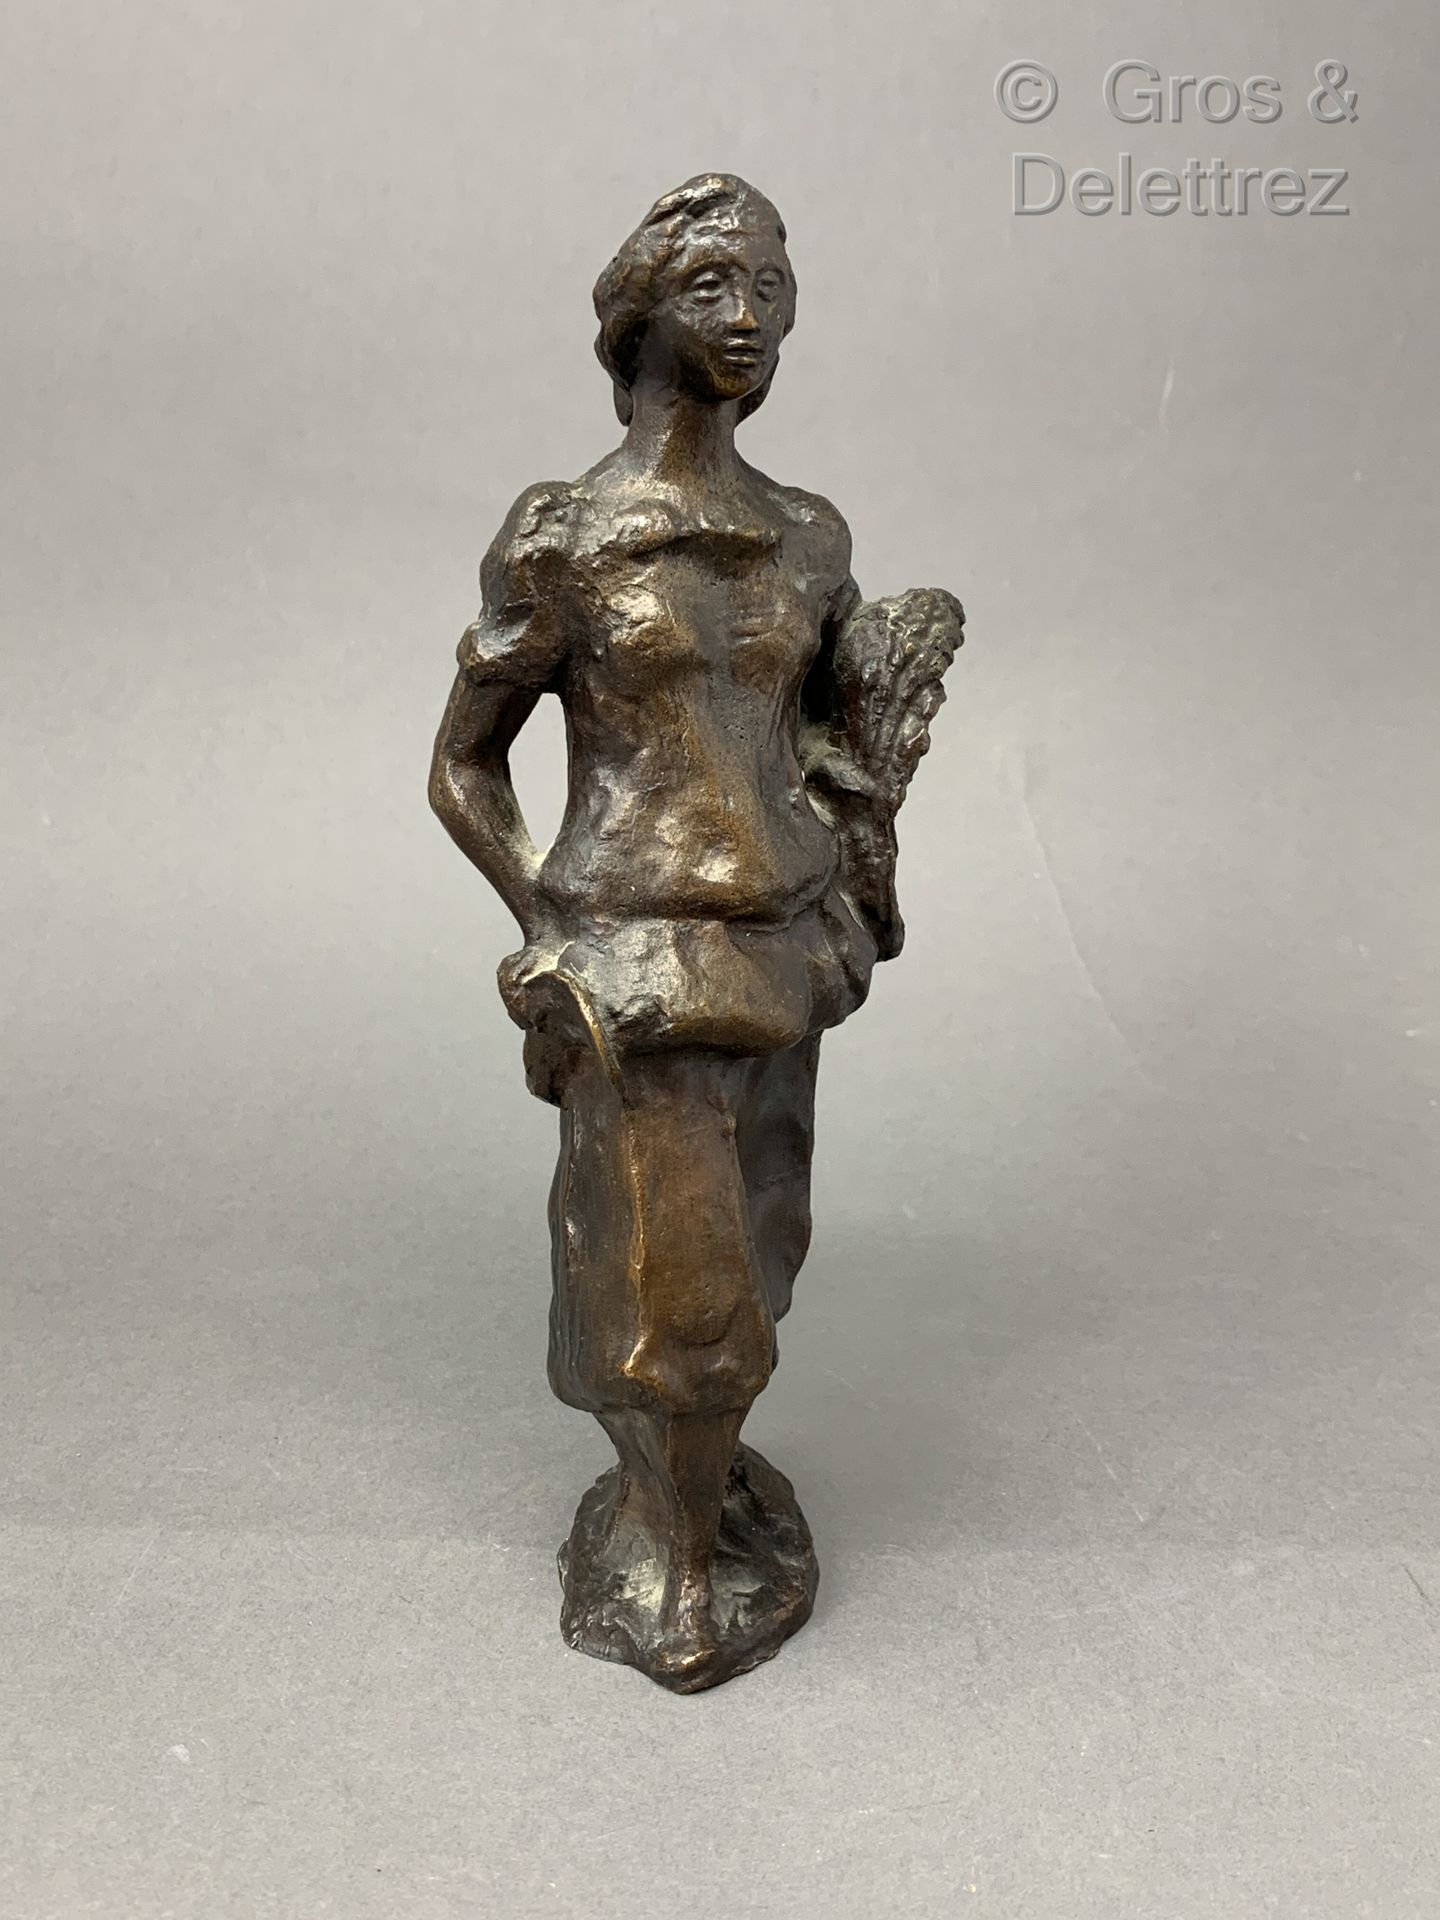 Null FRANZÖSISCHE ARBEIT 1930-1940

Bronzeskulptur mit brauner Patina, die eine &hellip;